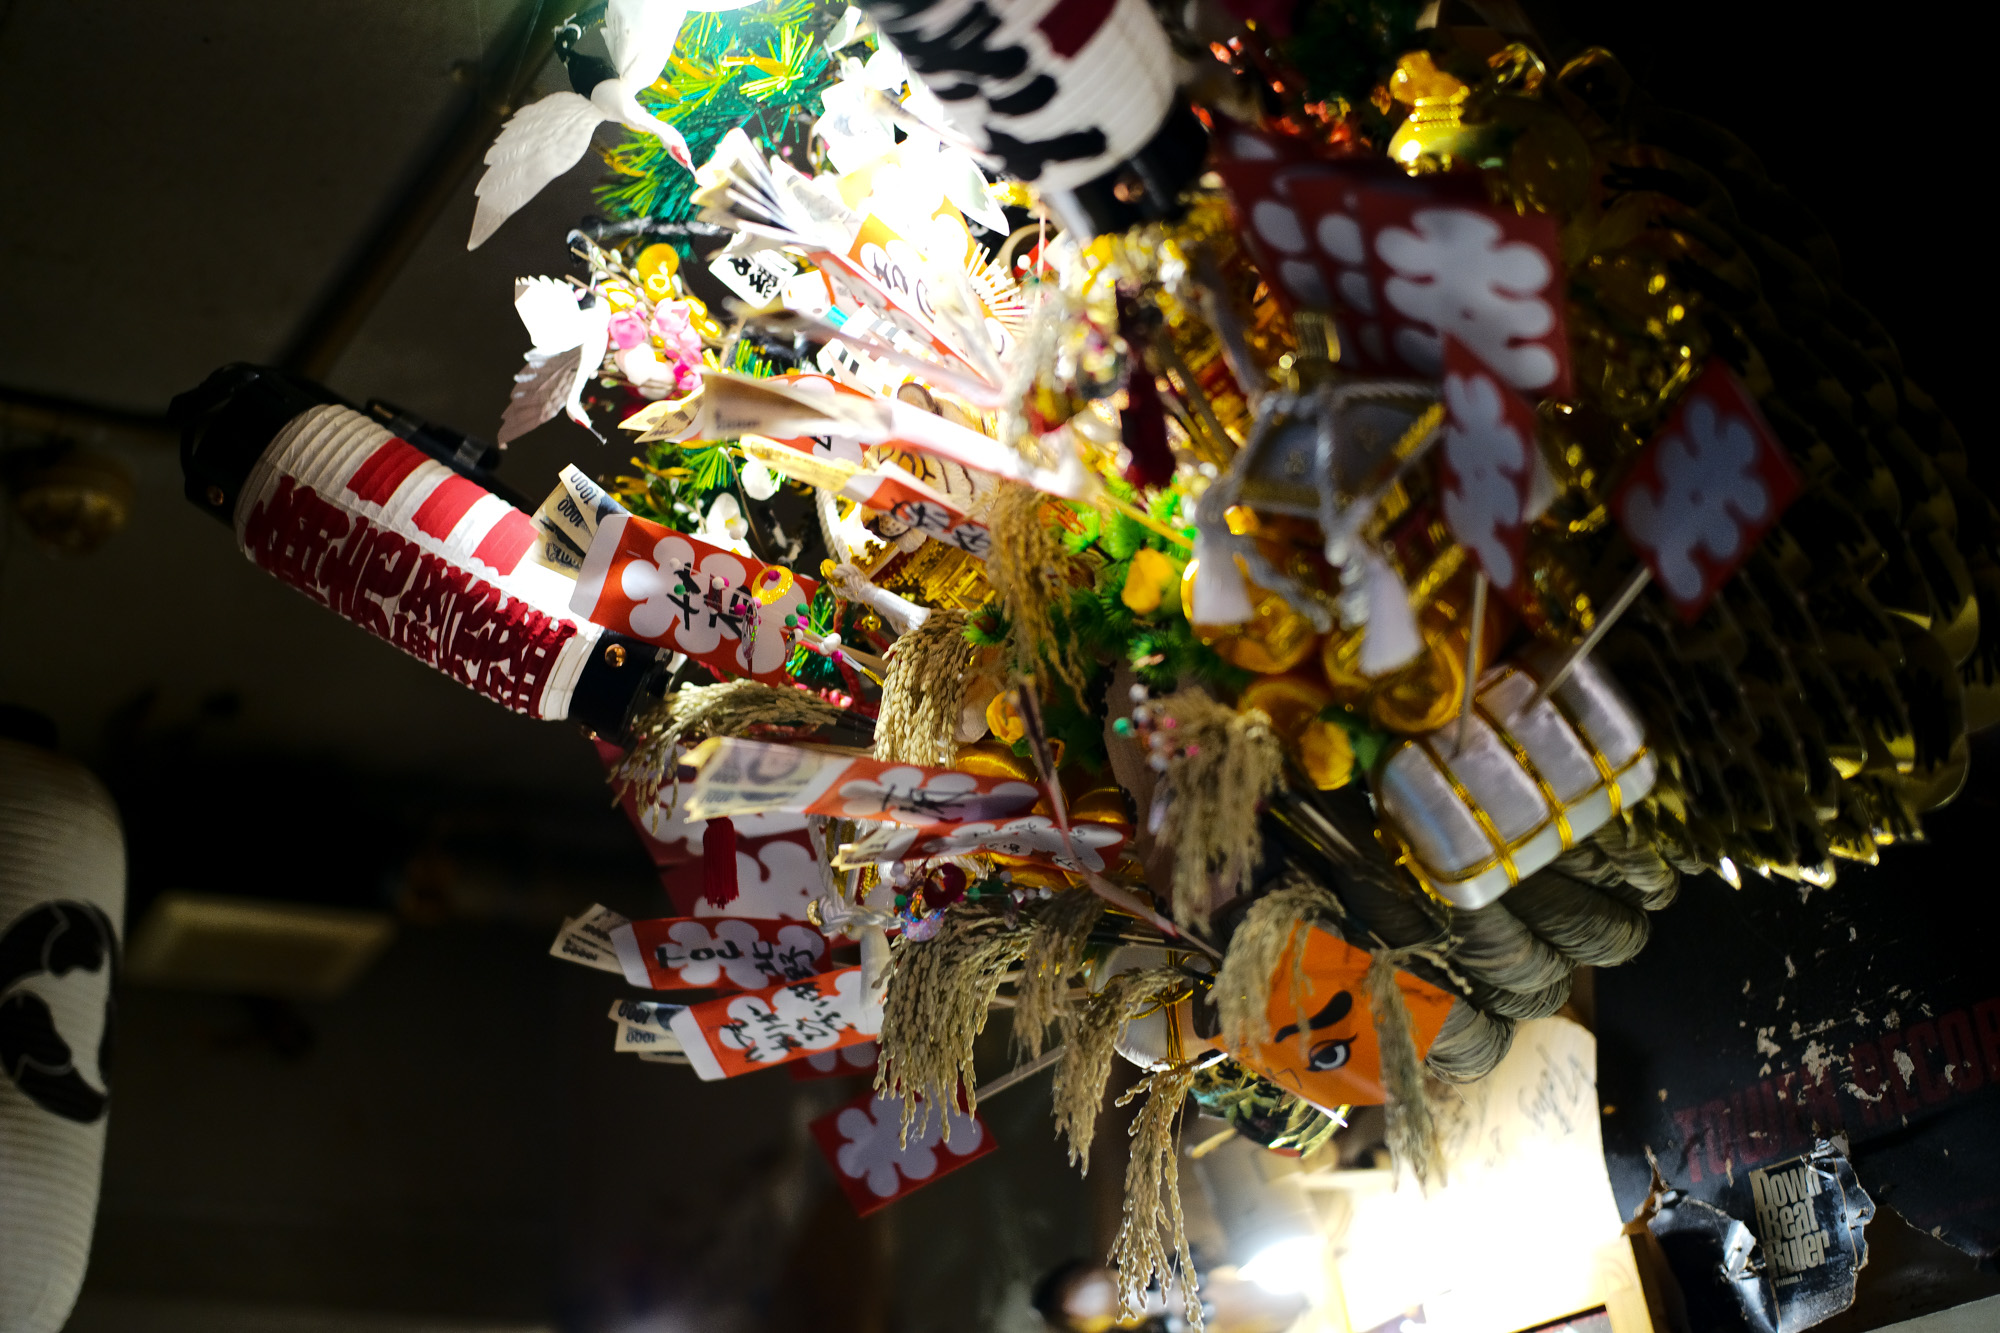 なるきよ 東京 渋谷 青山 国籍を問わないアーティストや業界人たちが夜な夜な集い舌鼓を打つ。なぜ’なるきよ’なのか。吉田成清 東京都渋谷区渋谷2-7-14 中村ビル　Ｂ１Ｆ 03-5485-2223 店内のカウンター前にはおいしそうな食材がたくさん並んでいた。客が来ないのに、過剰なくらい並んでいた。良い店だと思った。食材は新鮮で料理はうまい。サービスもいい。大将をはじめ、店員さんたちの心遣いもいい。それから数年後、「なるきよ」は繁盛店となった。青山通りから裏通りに入った隠れ家的な居酒屋として、業界人を始め、いろんな有名人も訪れるようになった。その後、大将はパリコレでケータリングを担当するほどの人になった。